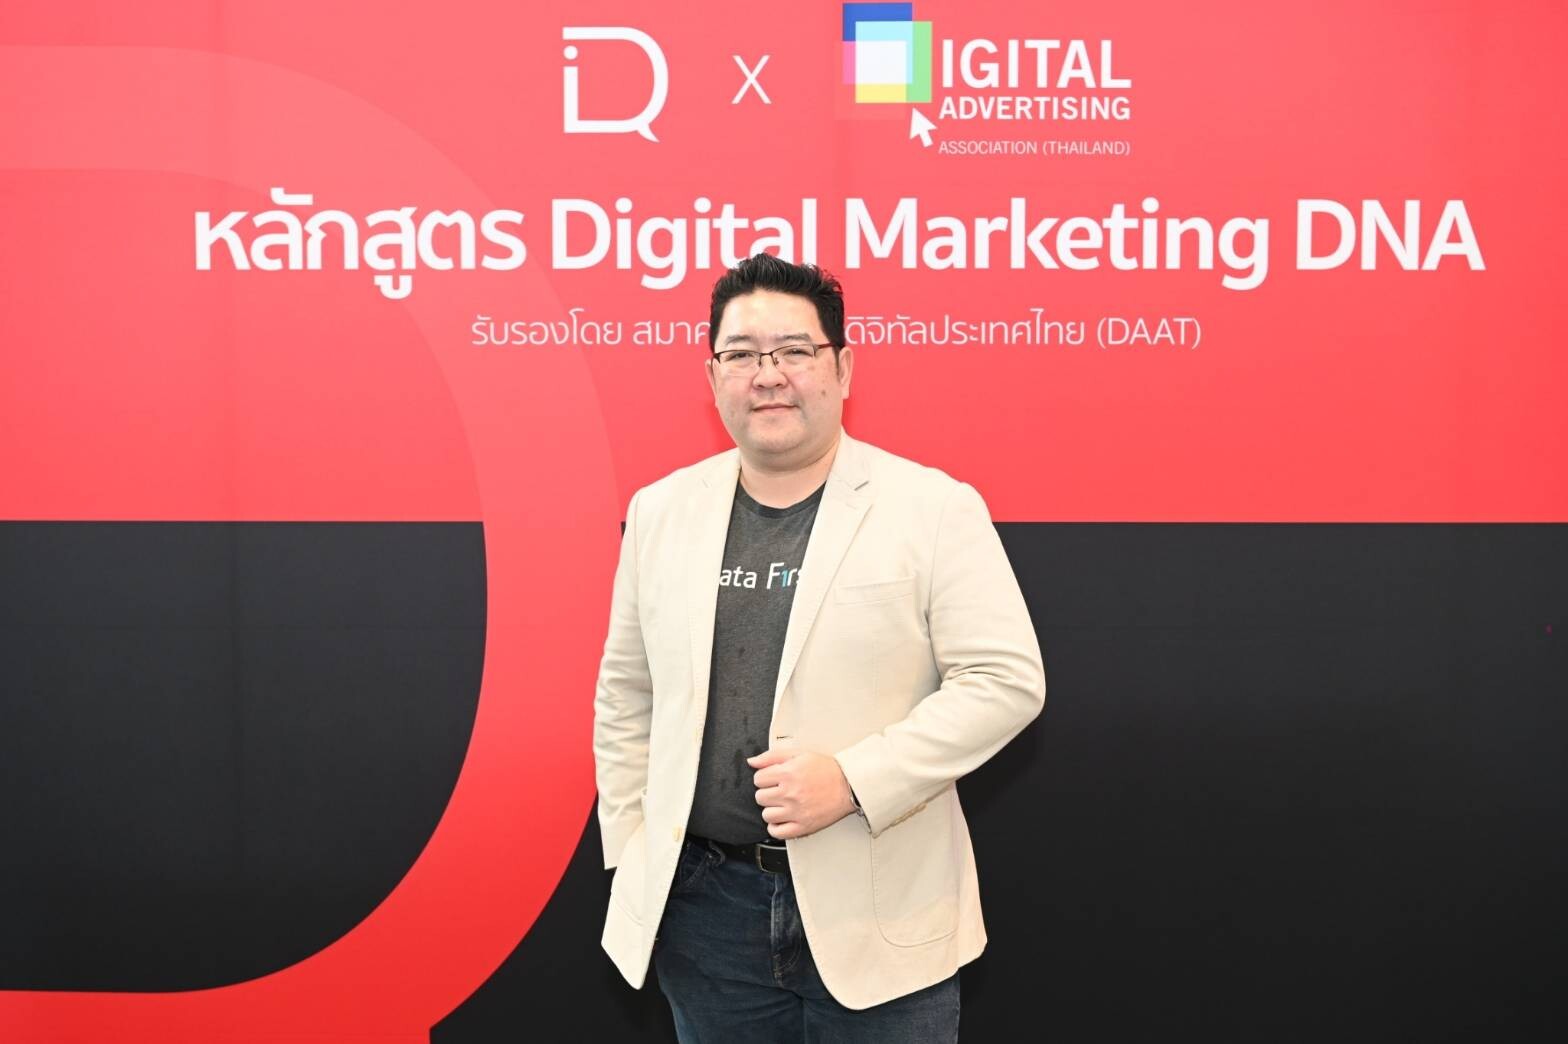 สมาคมโฆษณาดิจิทัล ประเทศไทย (DAAT) และ DIQ Academy เปิดตัวหลักสูตรออนไลน์ "Digital Marketing DNA" มาตรฐานความรู้ด้านสายงาน Digital Marketing ครั้งแรกของไทย